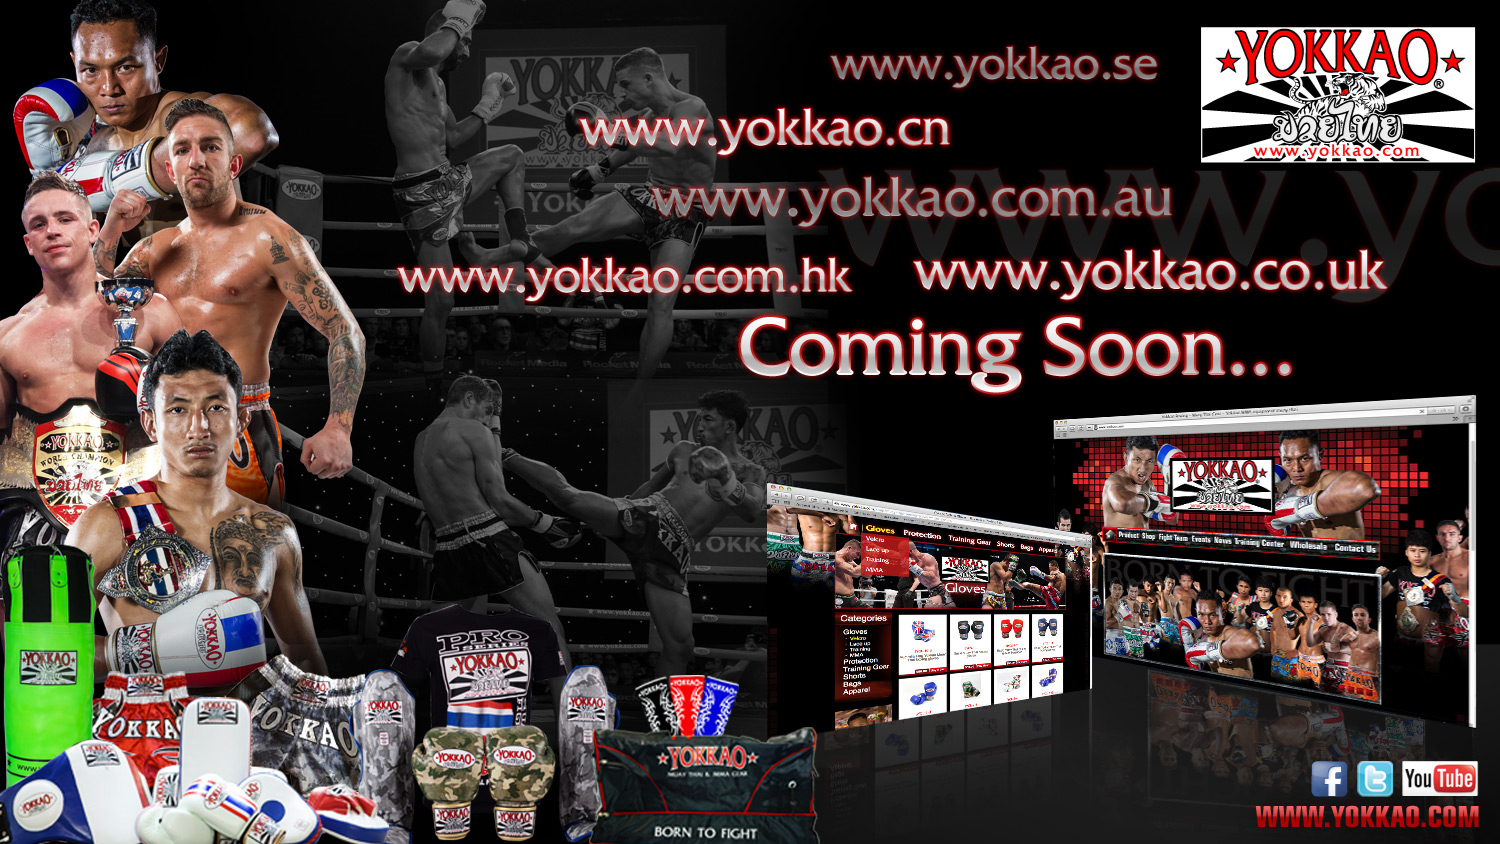 Yokkao coming online soon worldwide!